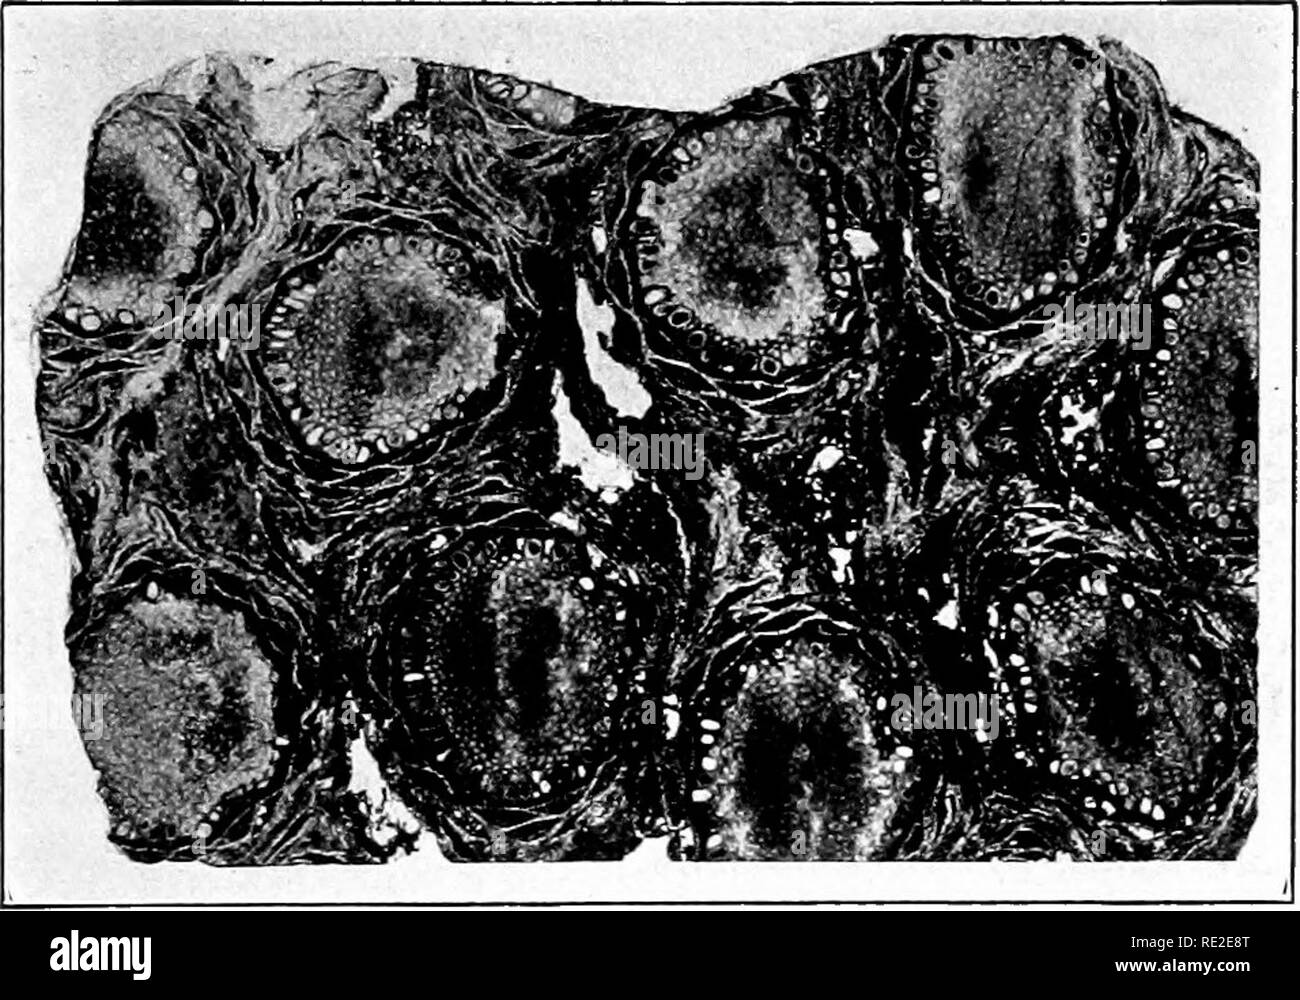 . Fondamenti di botanica. La botanica. FiG. 426.-Cycadeoidea ingens. Restauro di una Expanded bispor- angiate cono, o fiore, quasi in sezione longitudinale. Ripristinato da un fossile silicified. (Dopo Wieland.). Fig. 427.-Cycadeoidea Dartoni. Sezione tangenziale attraverso tessuti esterni del (fossili) tronco, mostrando il molto numerosi semi-coni- i semi sono molto piccole (l'illustrazione essendo formato naturale), e quasi ogni uno ha un embrione di dicotiledoni. Ci sono stati oltre 500 di tali coni del gambo originale. (Dopo una fotografia prestato dal prof. Wieland.). Si prega di notare che queste immagini sono extrac Foto Stock